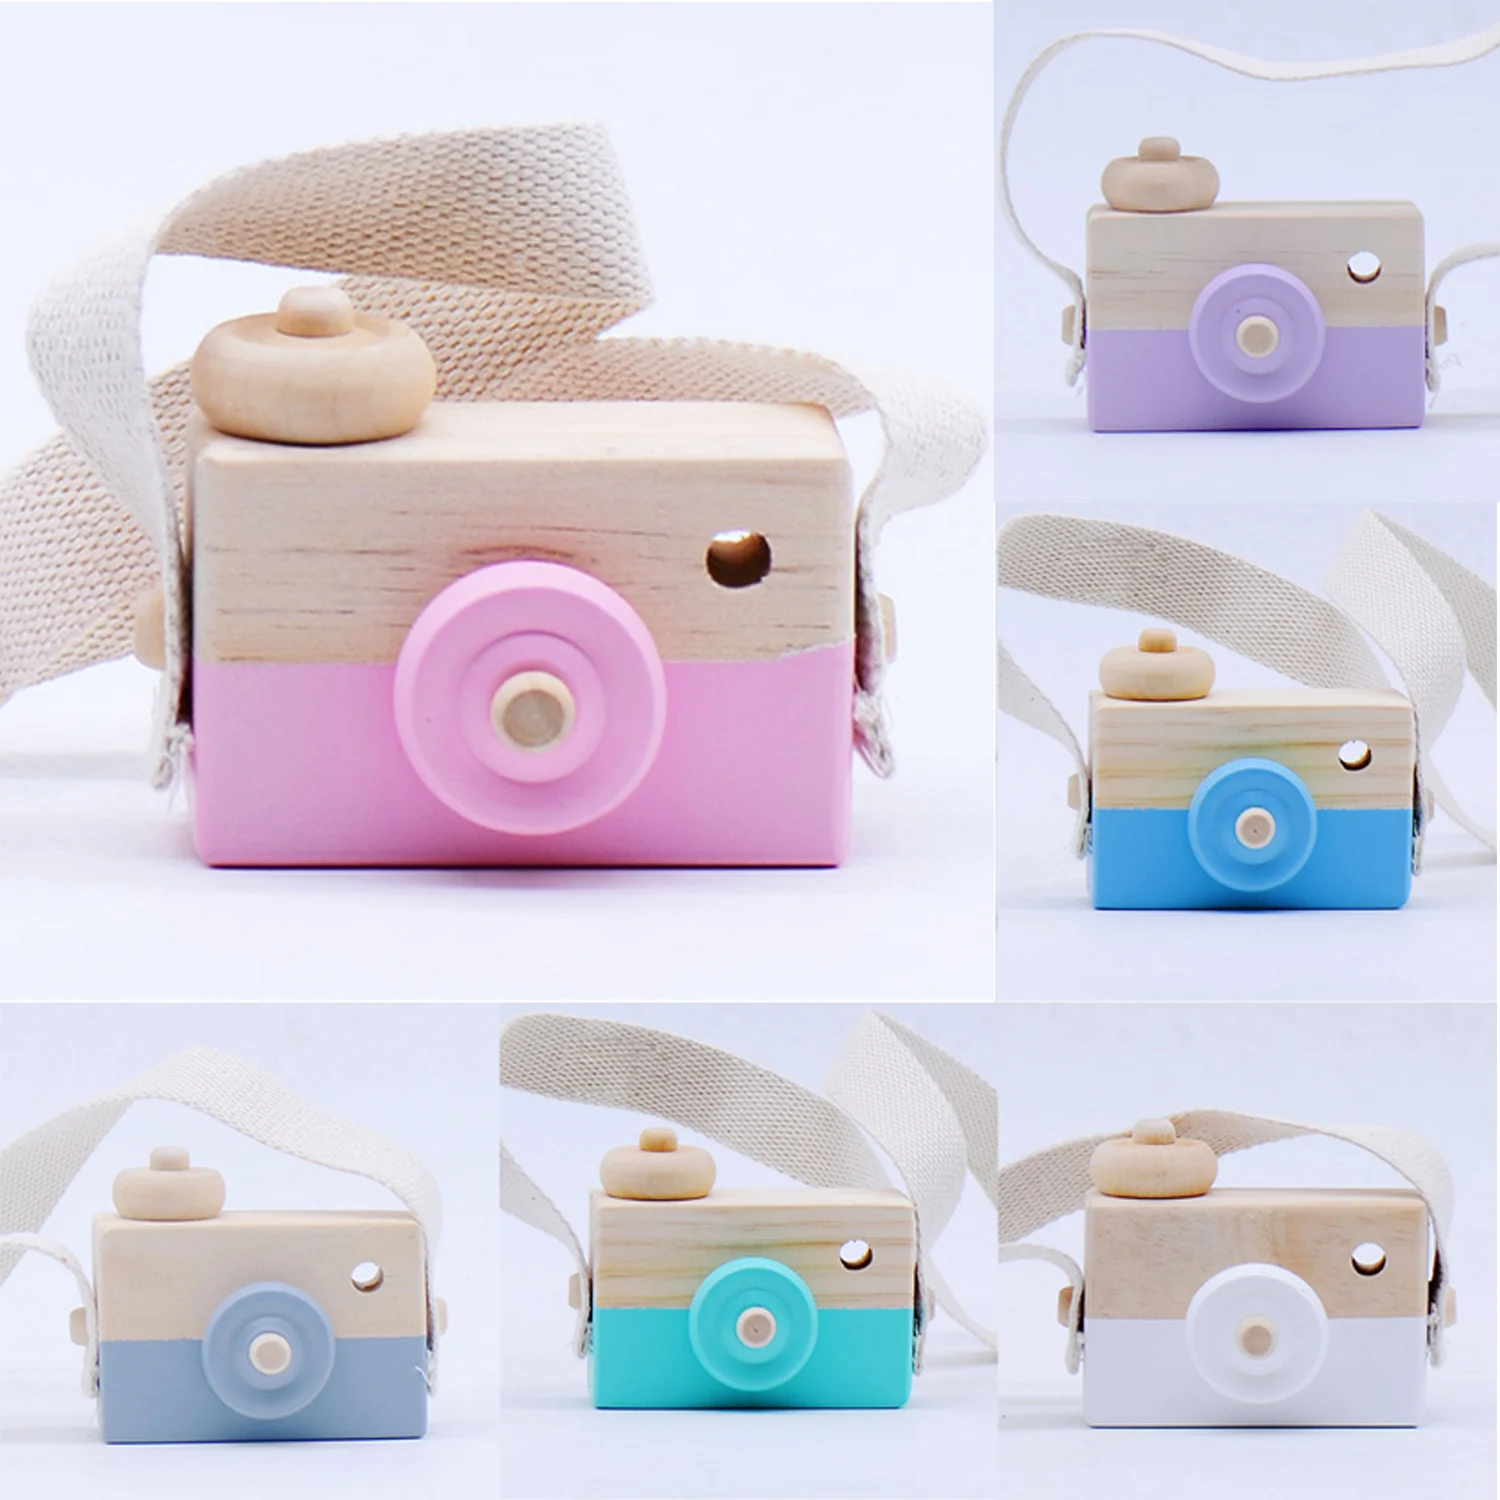 Enfants mignon Mini caméra en bois naturel jouet photographie accessoires suspendus caméra jouets bébé jouet éducatif anniversaire cadeaux de noël